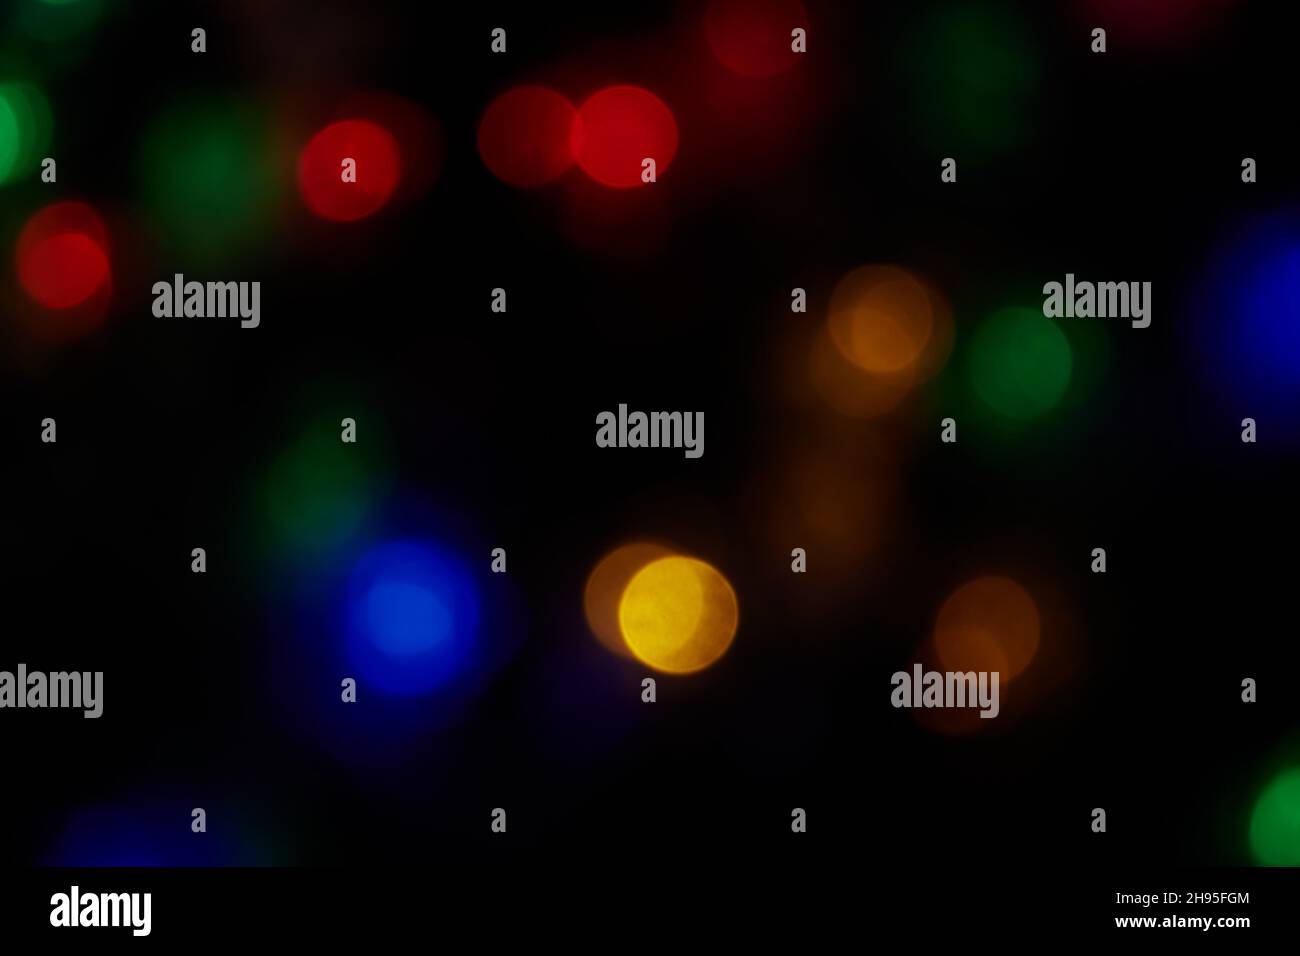 Defokussierte, große Bokeh-Lichter mit bunten Farben auf schwarzem Hintergrund. Verschwommene abstrakte blaue, grüne, rote, orangefarbene Flecken. Hintergrund für unscharfe Bokeh-Flecken Stockfoto